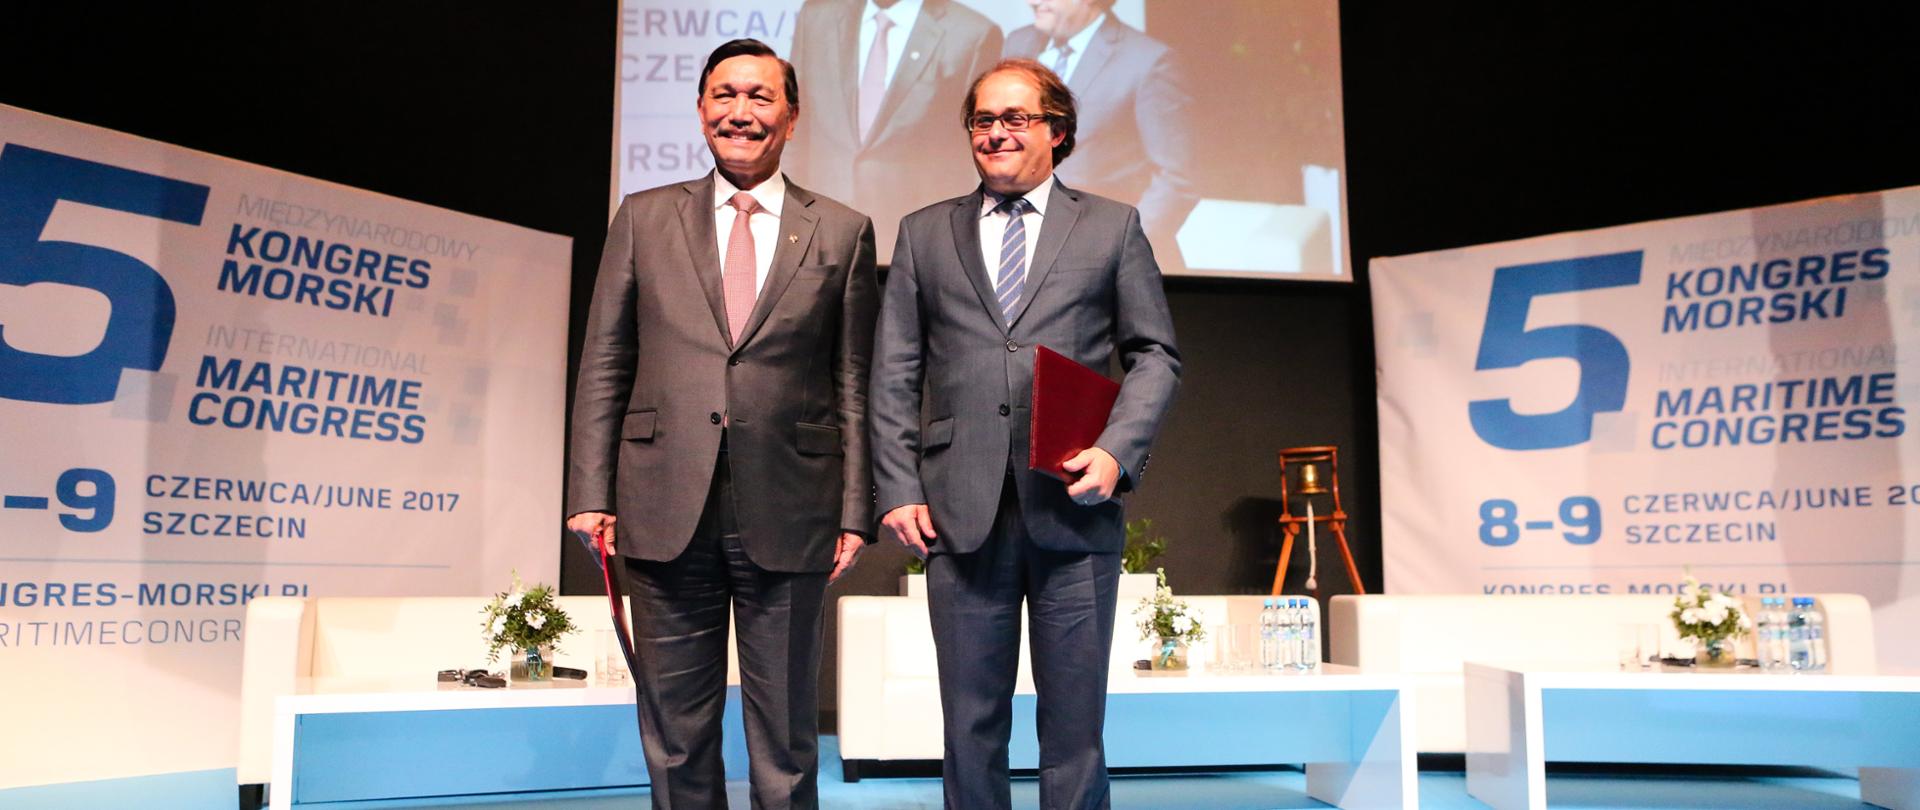 Na zdjęciu od lewej: Luhut Binsar Panjaitan - wicepremier Indonezji oraz minister koordynujący sprawy morskie oraz Marek Gróbarczyk - minister gospodarki morskiej i żeglugi śródlądowej